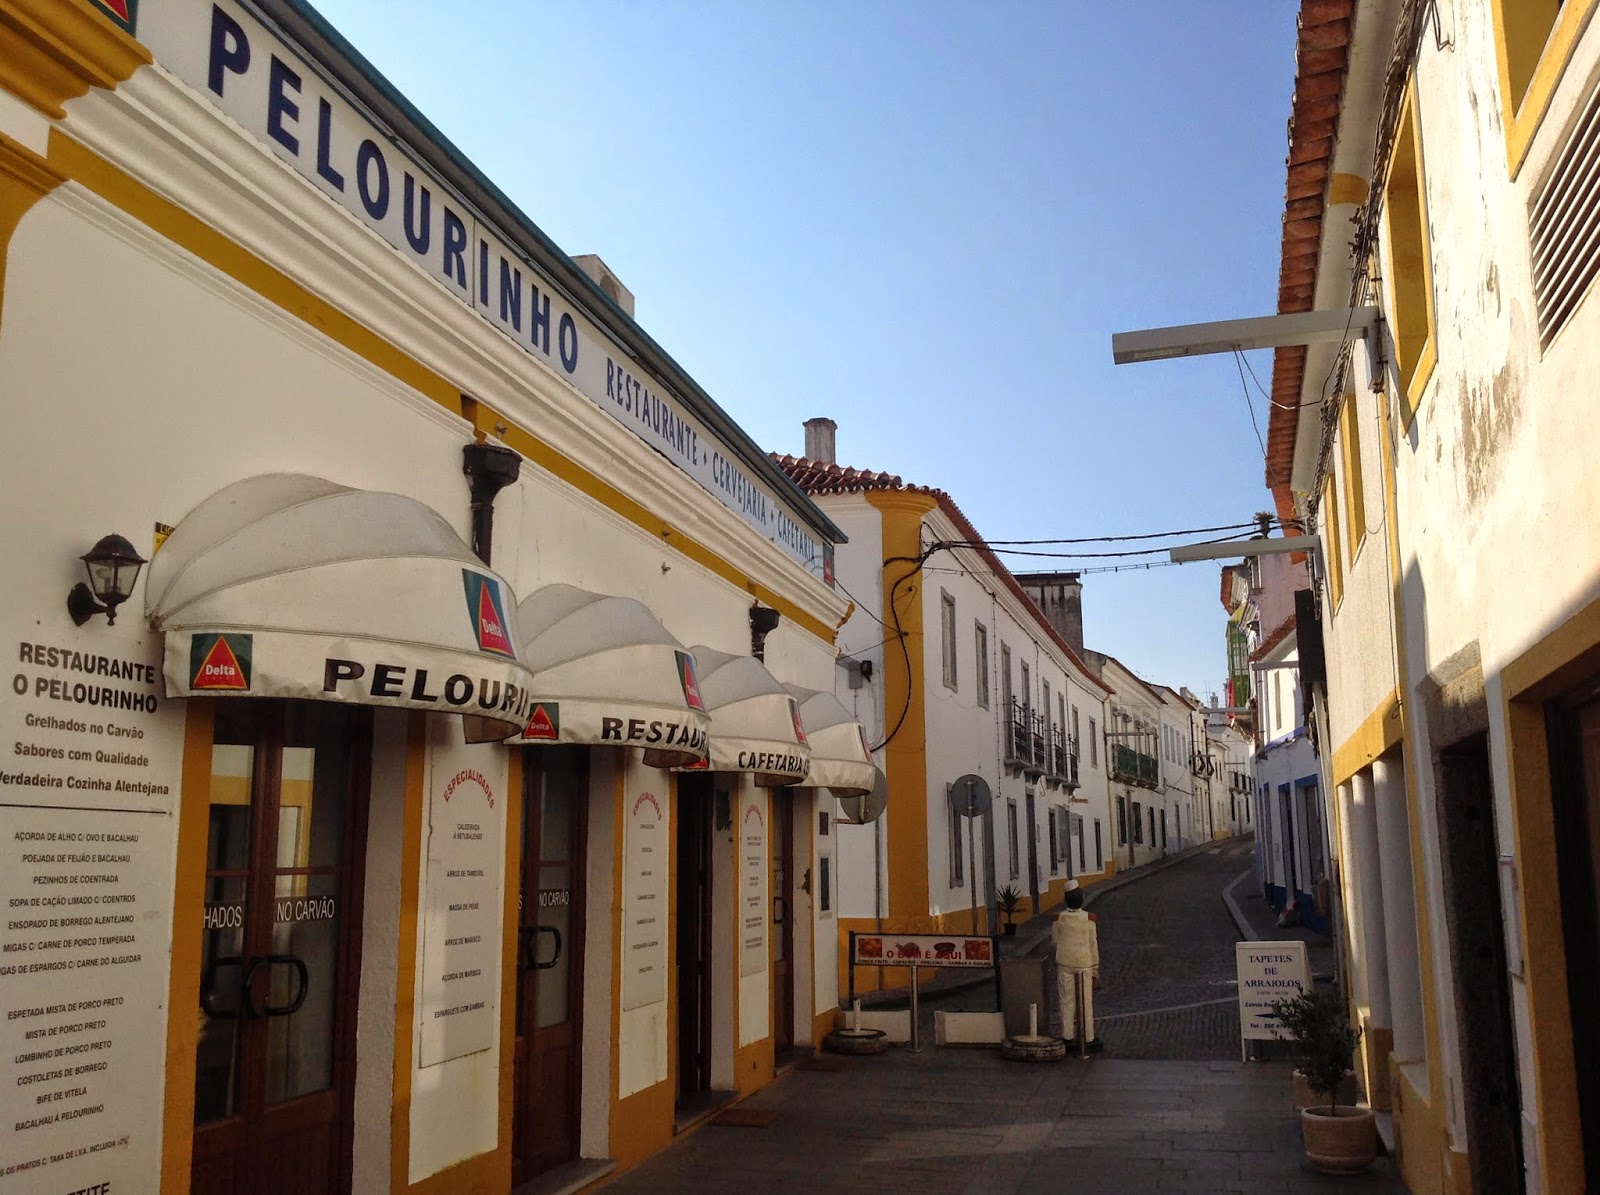 Um restaurante Português - O Pelourinho - Arraiolos - Portugal